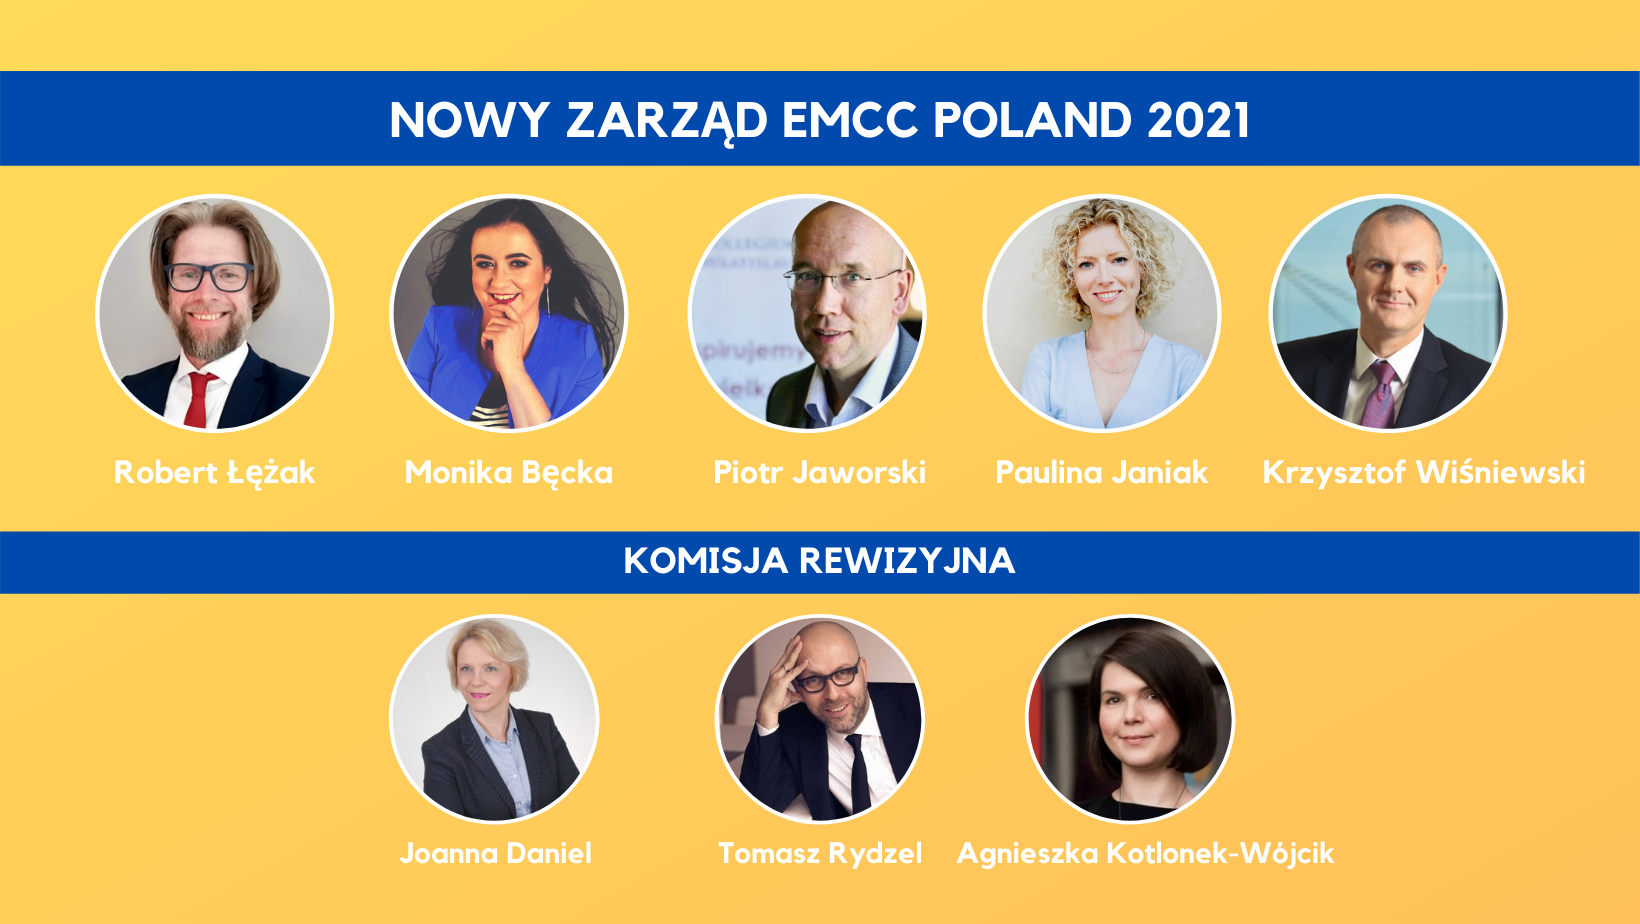 Zarząd EMCC Poland 2021